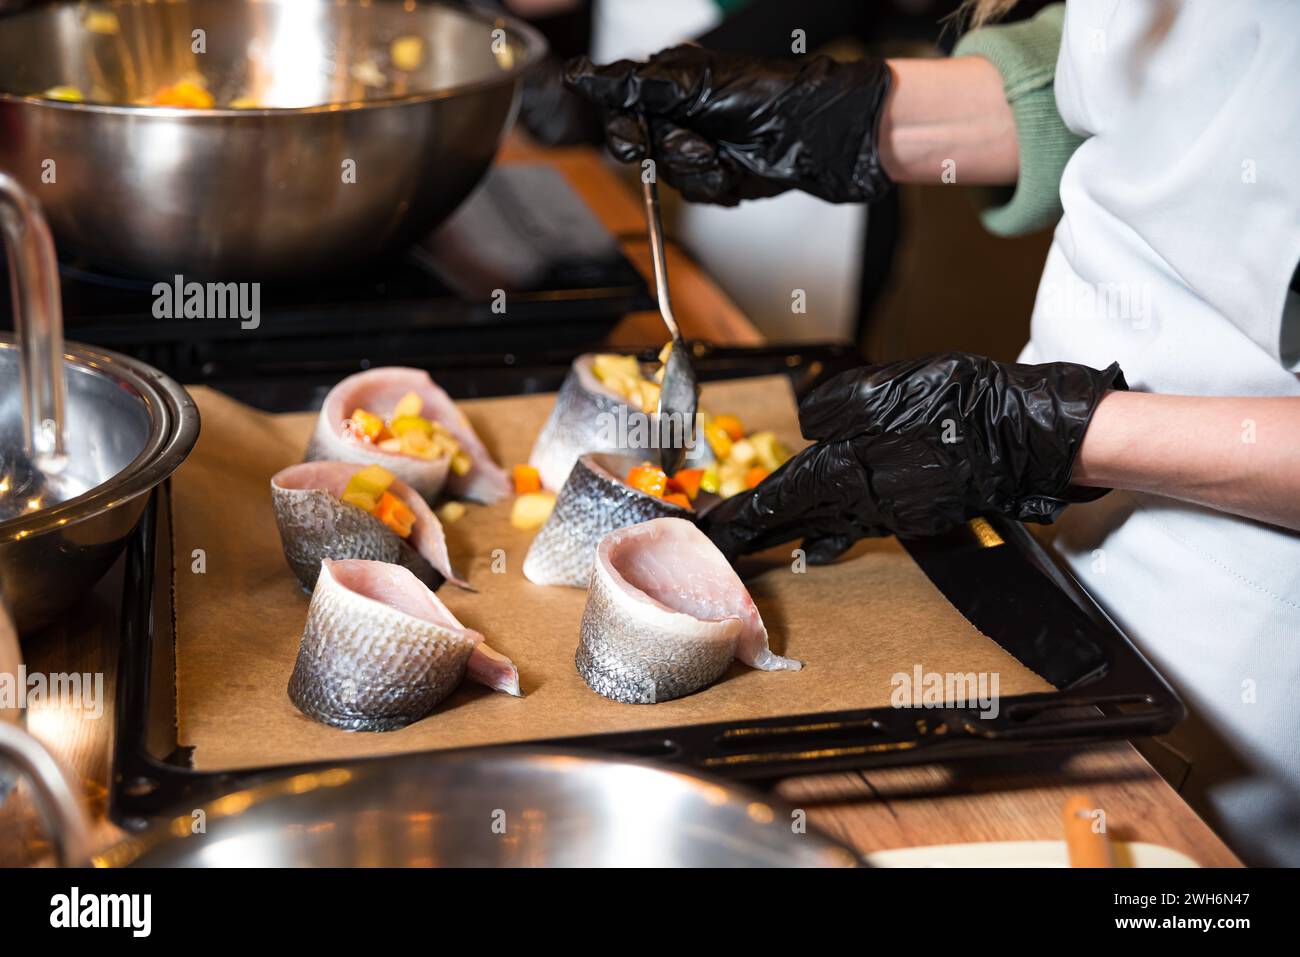 Chef avec des gants noirs farçant soigneusement les filets de poisson avec des légumes coupés en dés pour un repas gastronomique, montrant des techniques culinaires professionnelles. Banque D'Images